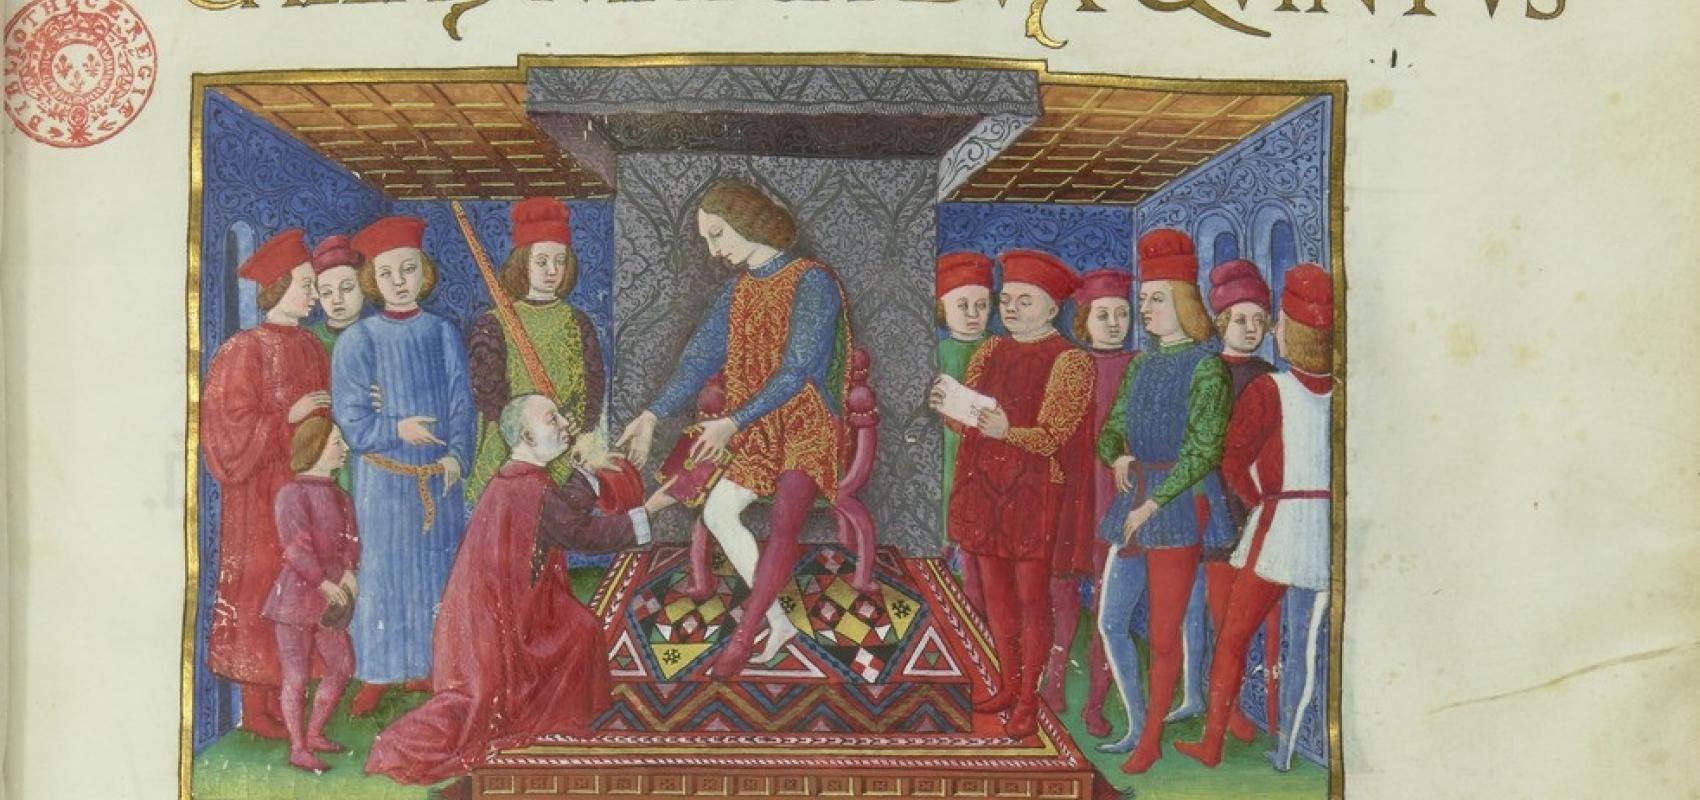 Girolamo Mangiaria, "De impedimentis matrimonii", Milan, enluminé par le Maître des Heures Birago - 1465-1460 - BnF, département des Manuscrits, Latin 4586 